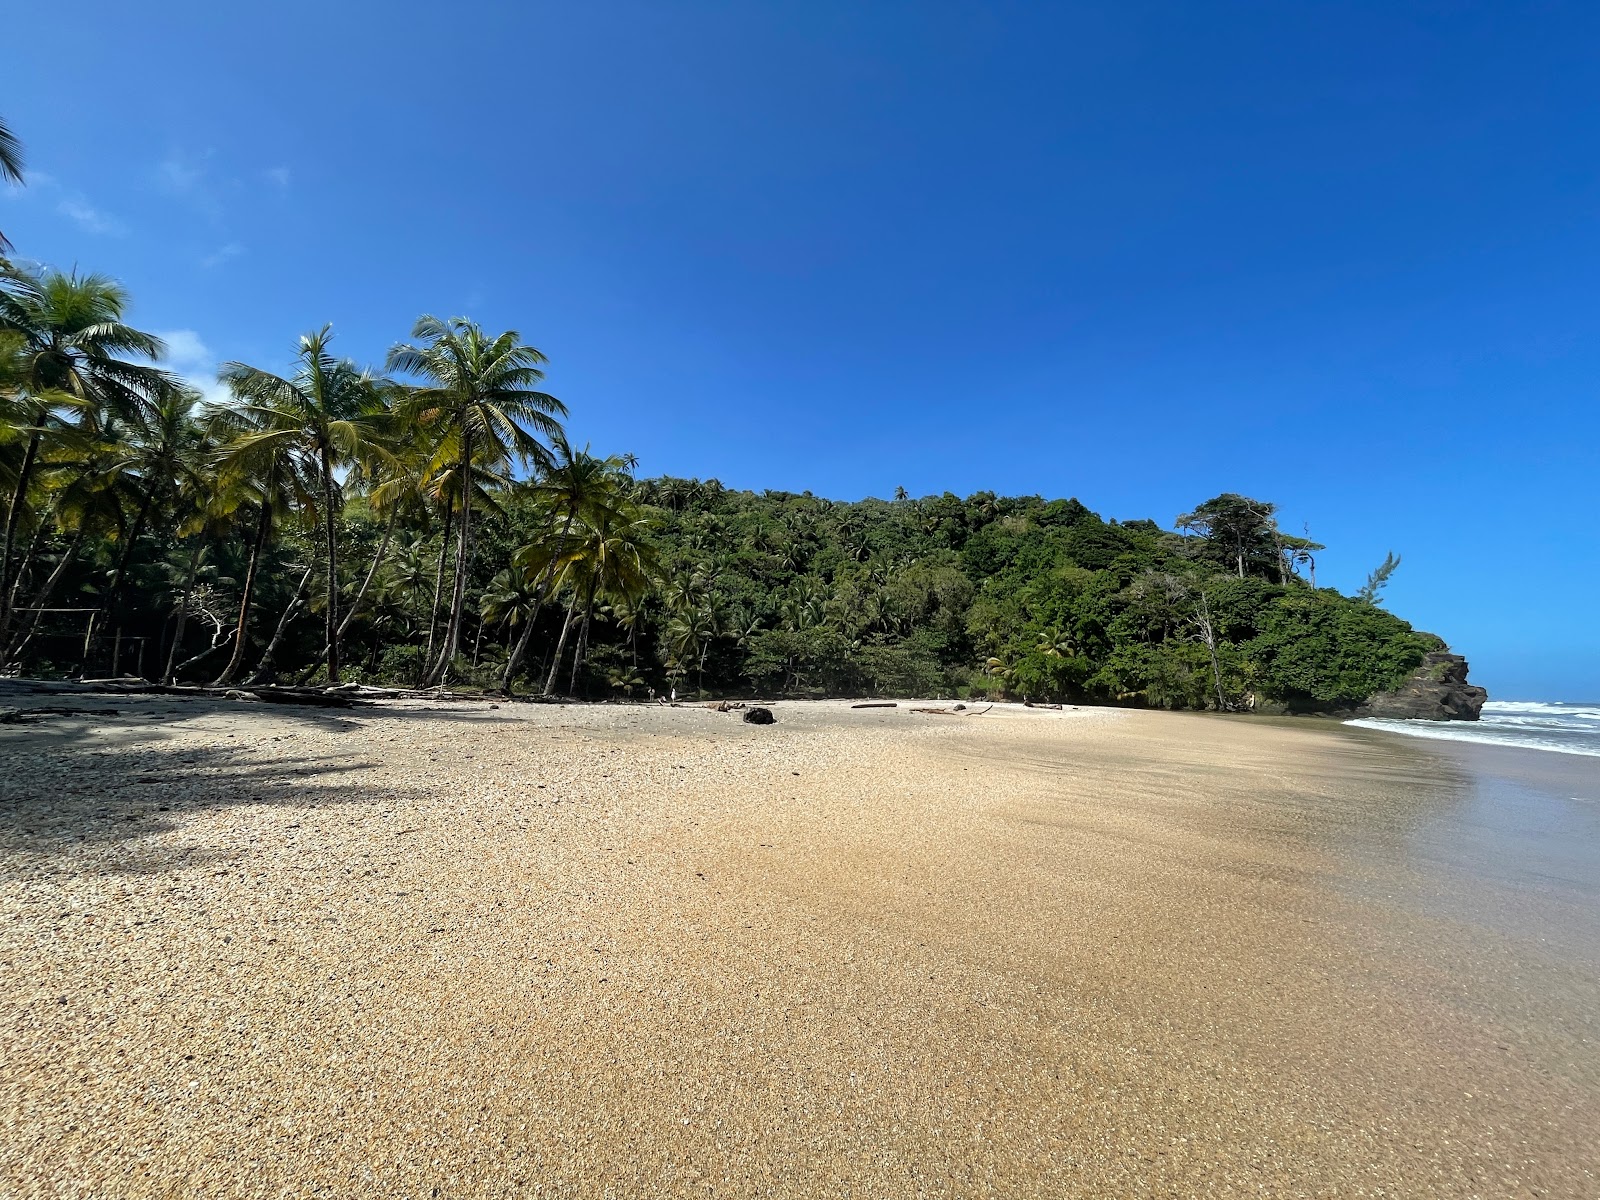 Zdjęcie Yara beach z powierzchnią lekki drobny kamyk